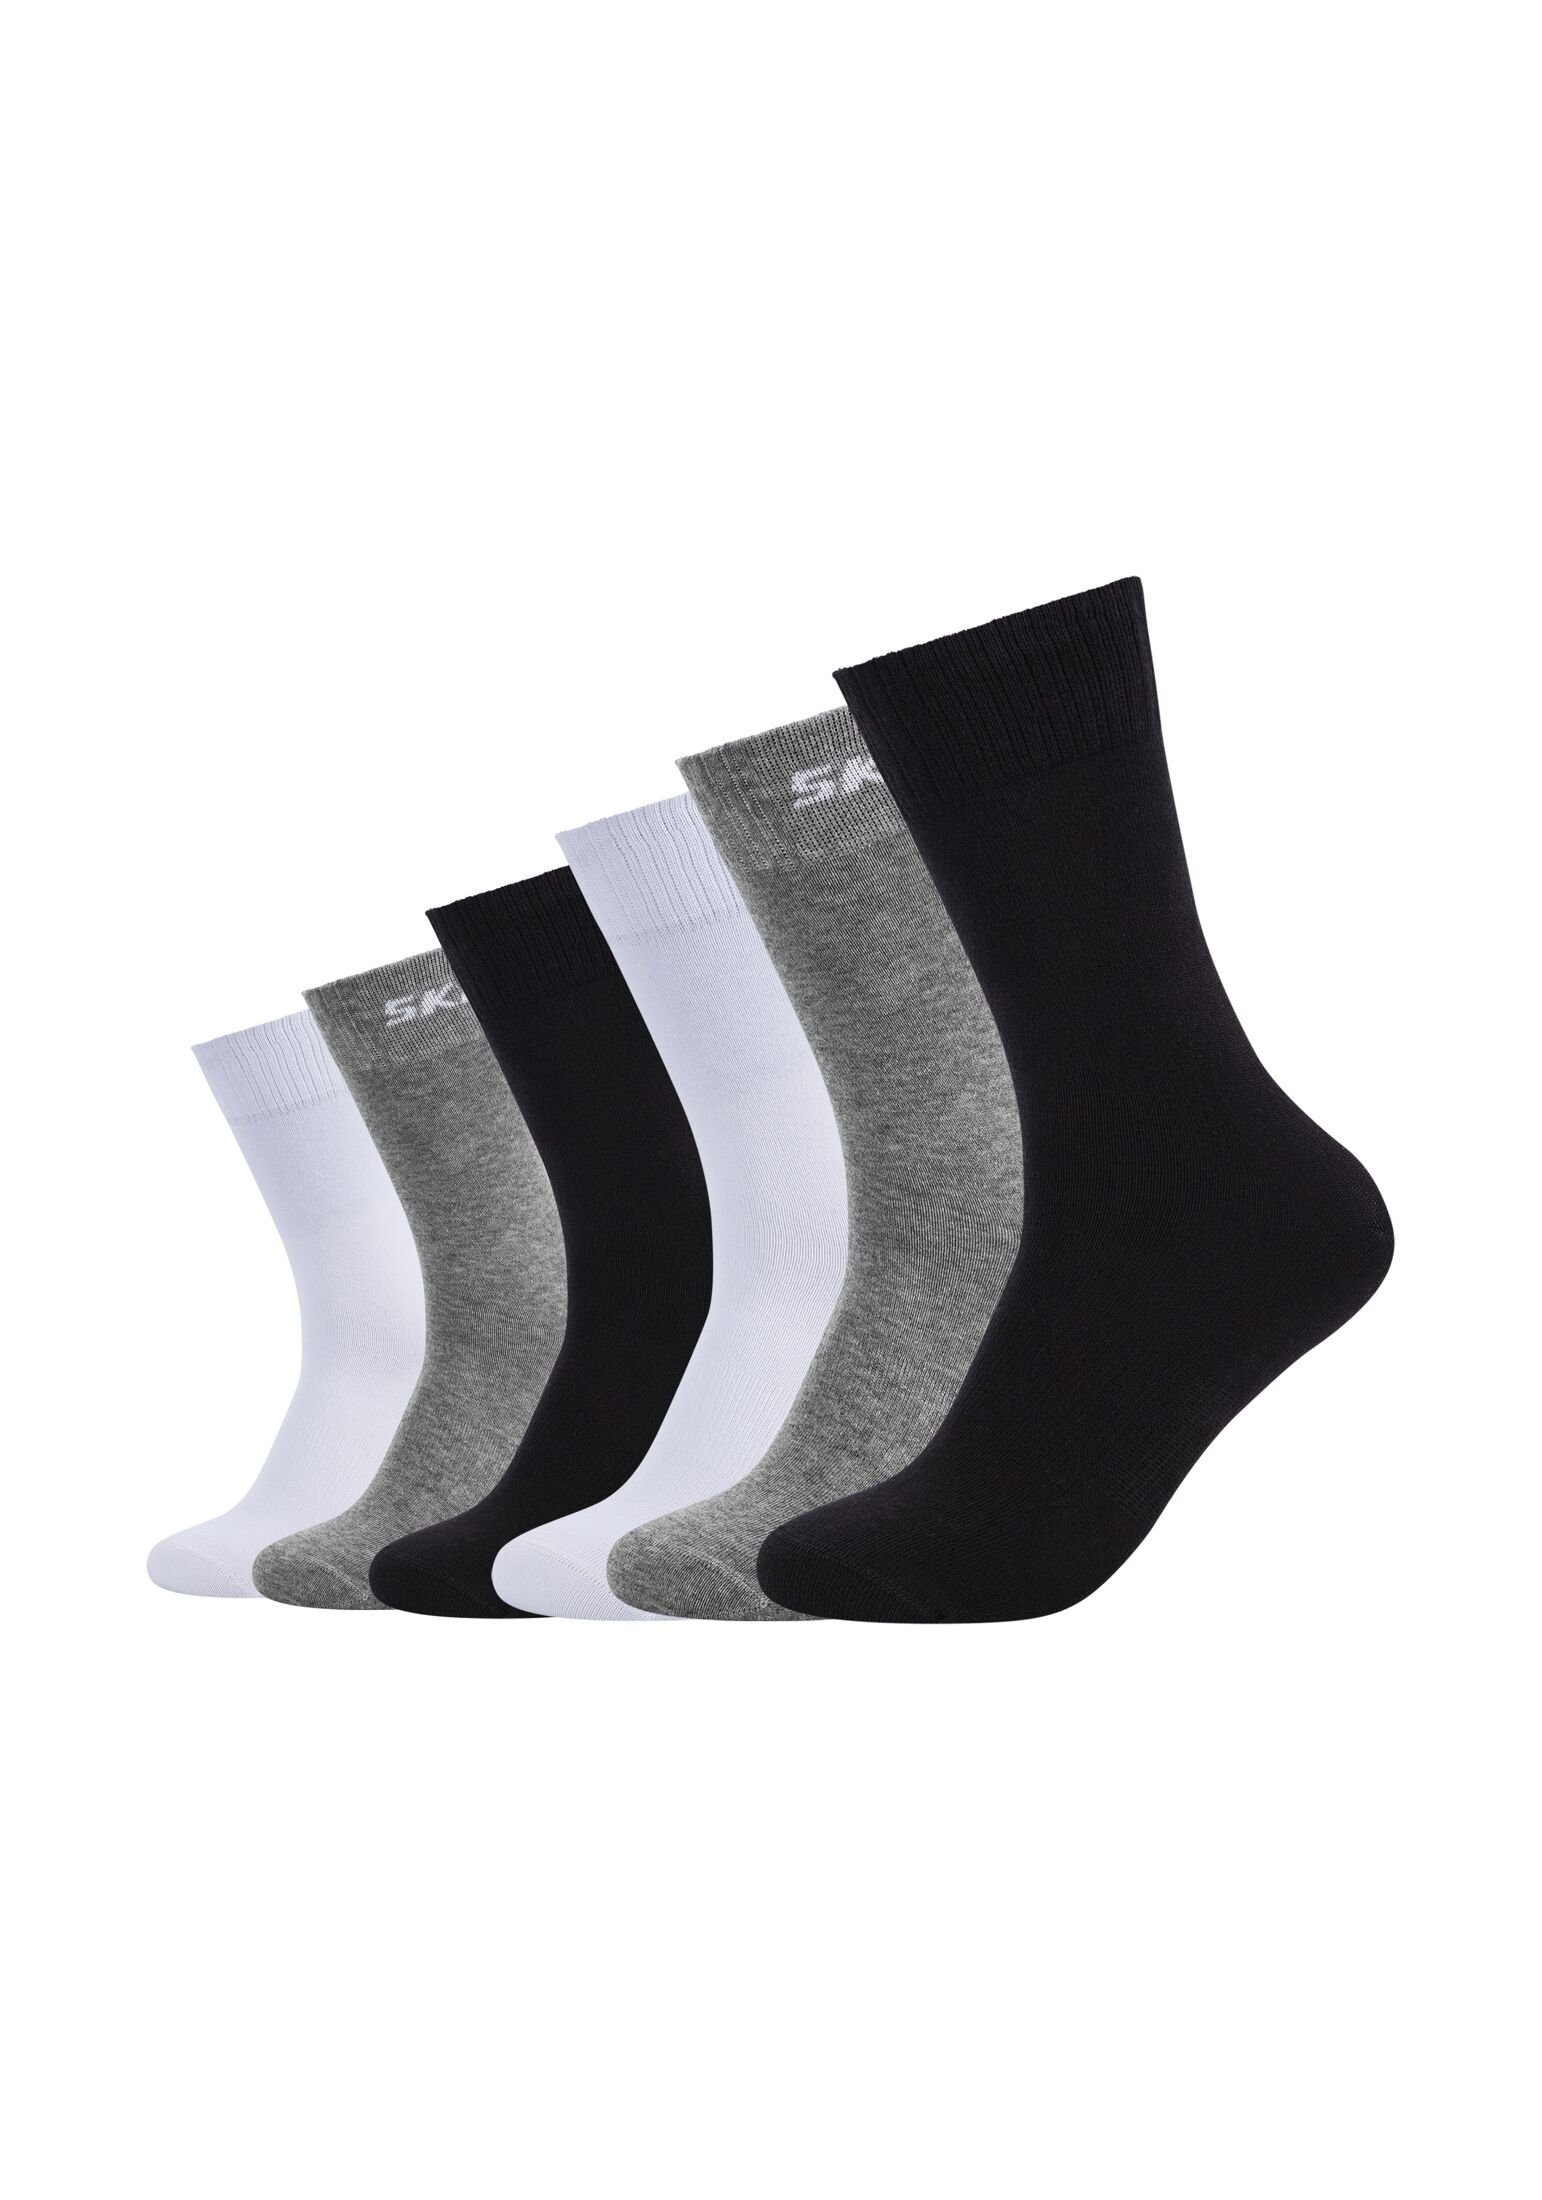 Socken Pack Skechers 6er mix black/grey Socken